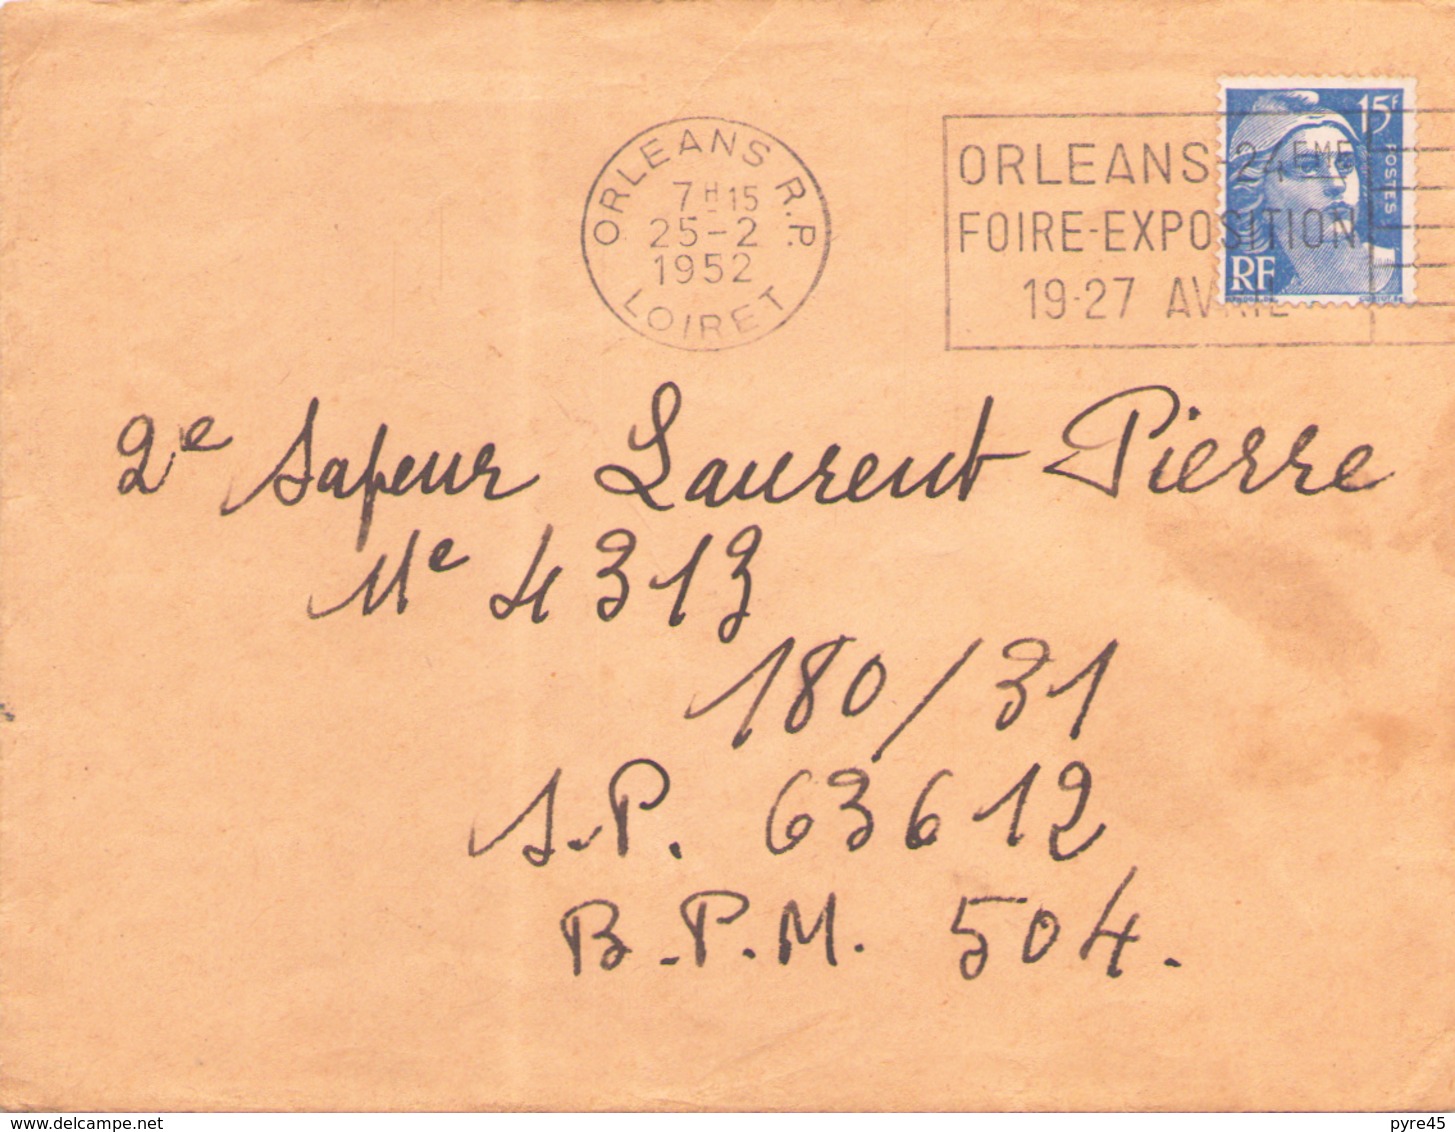 FRANCE ENVELOPPE DU 25 FEVRIER 1952 DE ORLEANS POUR SP 63612 BPM 504 POSTE AUX ARMEES - Covers & Documents